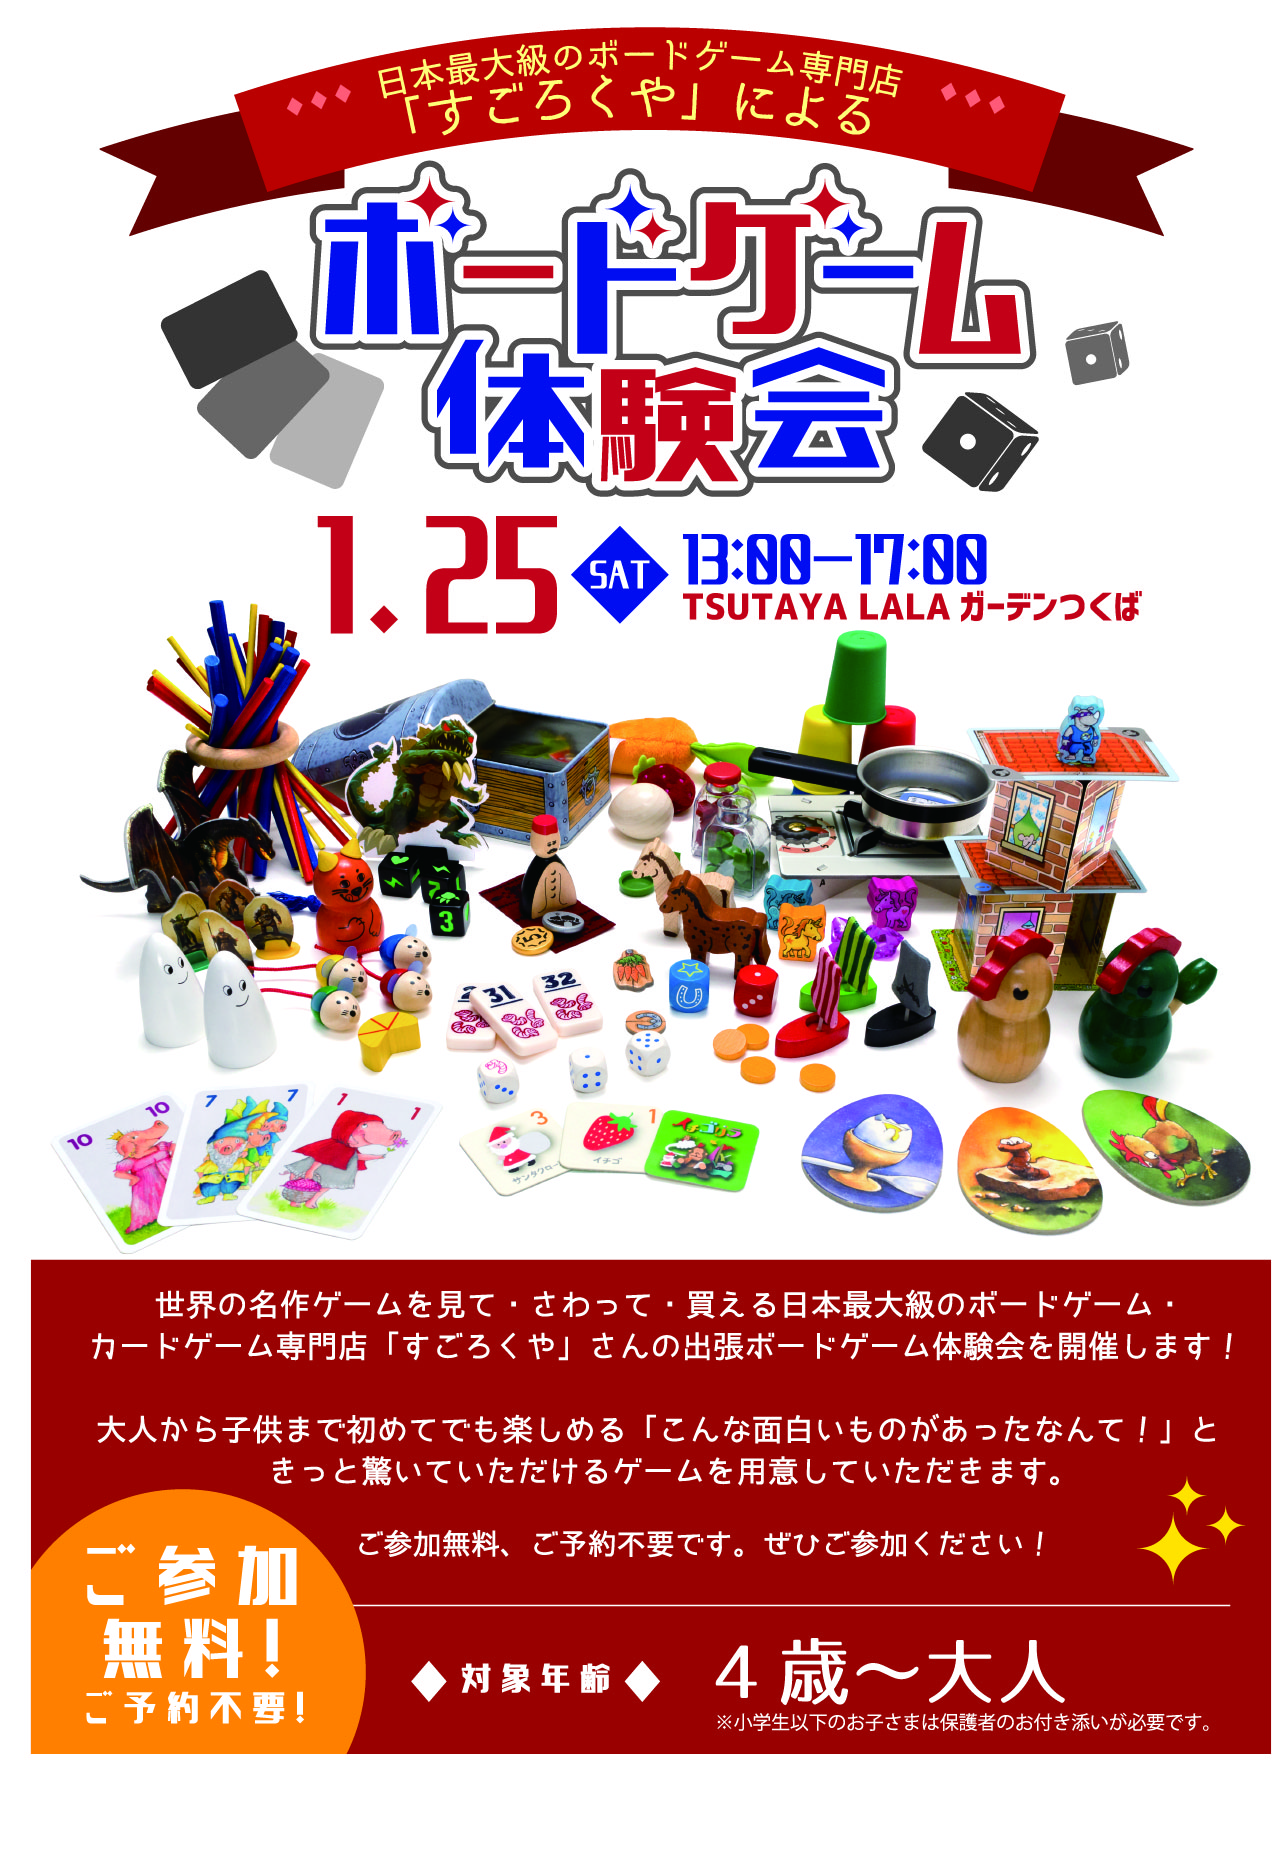 Tsutaya Lalaガーデンつくば Sur Twitter イベント ボードゲーム体験会開催 1月25日 土 13時 17時 日本最大級のボードゲーム カードゲーム専門店 すごろくや さんの出張ボードゲーム体験会を開催します 参加費は無料です 初めてでも楽しめるゲームをご